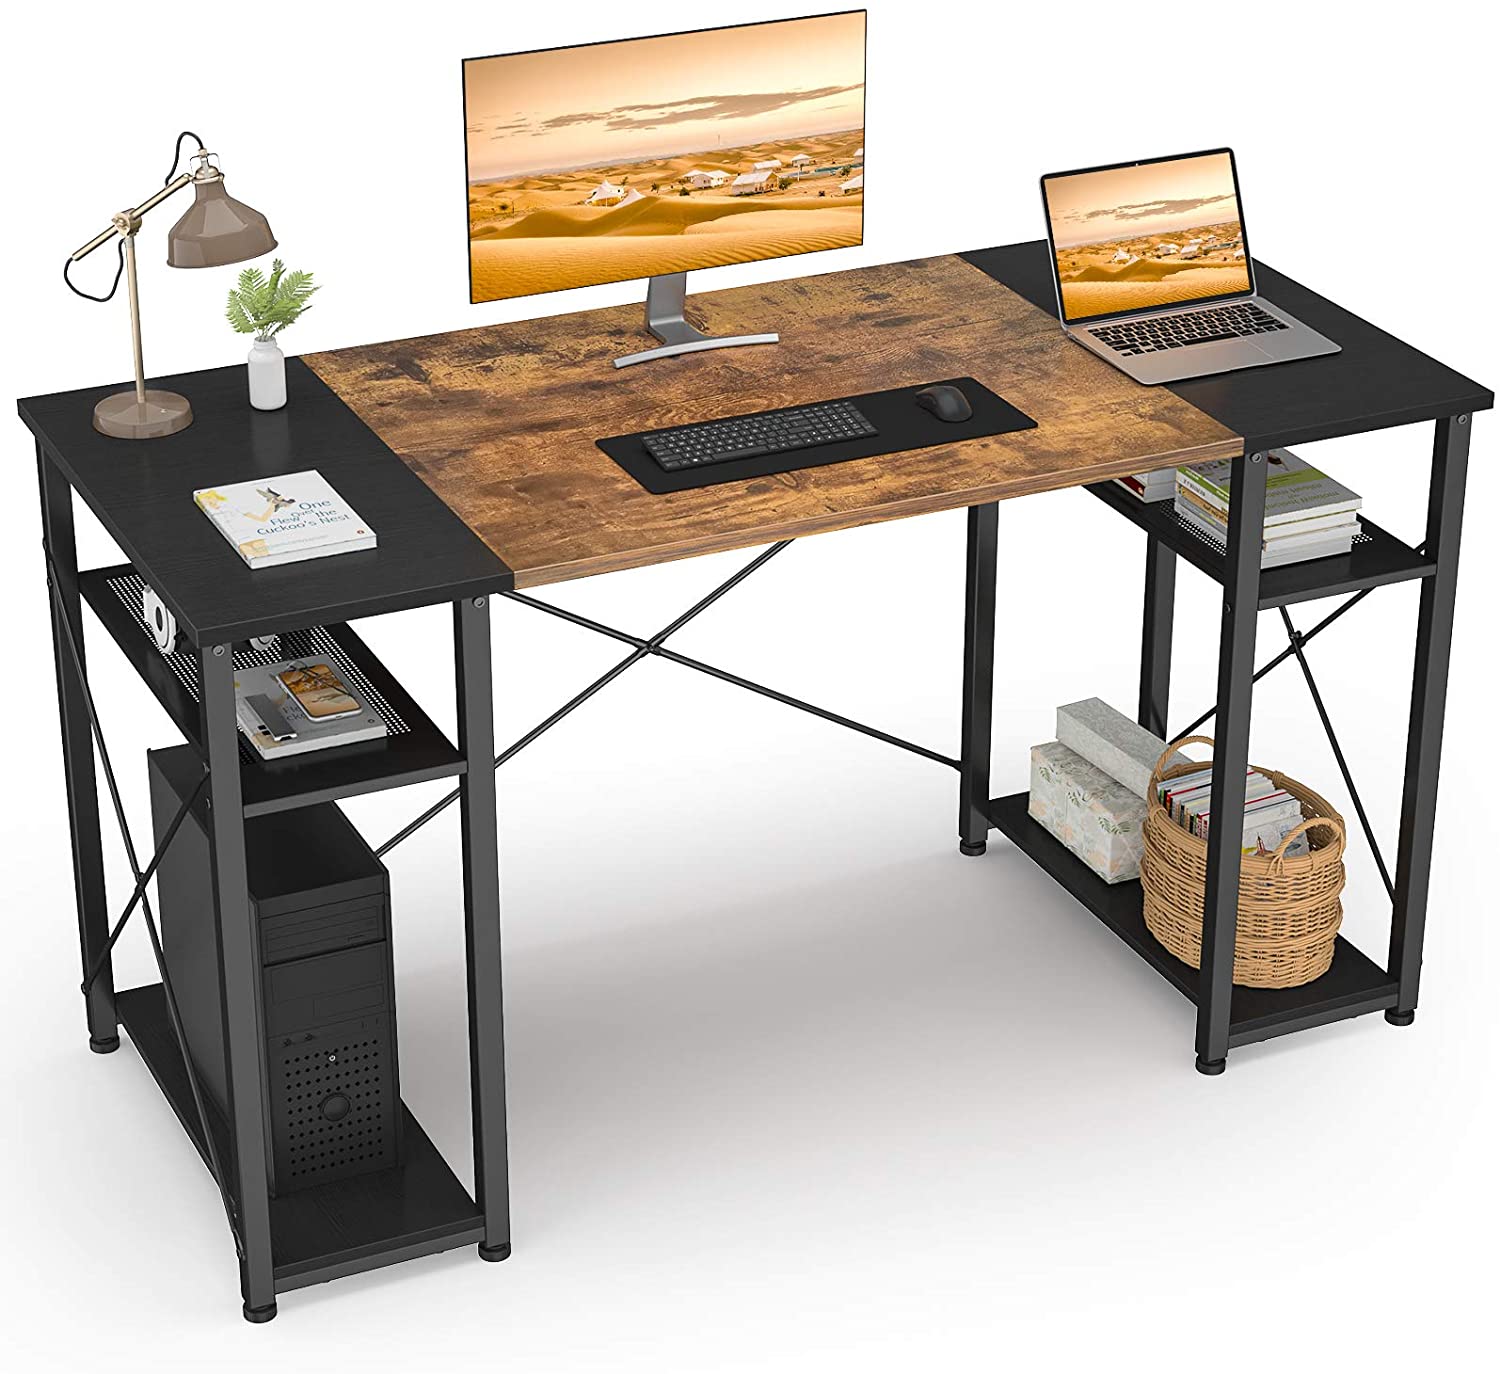 4 хадгалах тавиур бүхий бат бөх гэрийн оффисын ажлын ширээ Бат бөх орчин үеийн энгийн зөөврийн компьютер компьютерийн ширээ